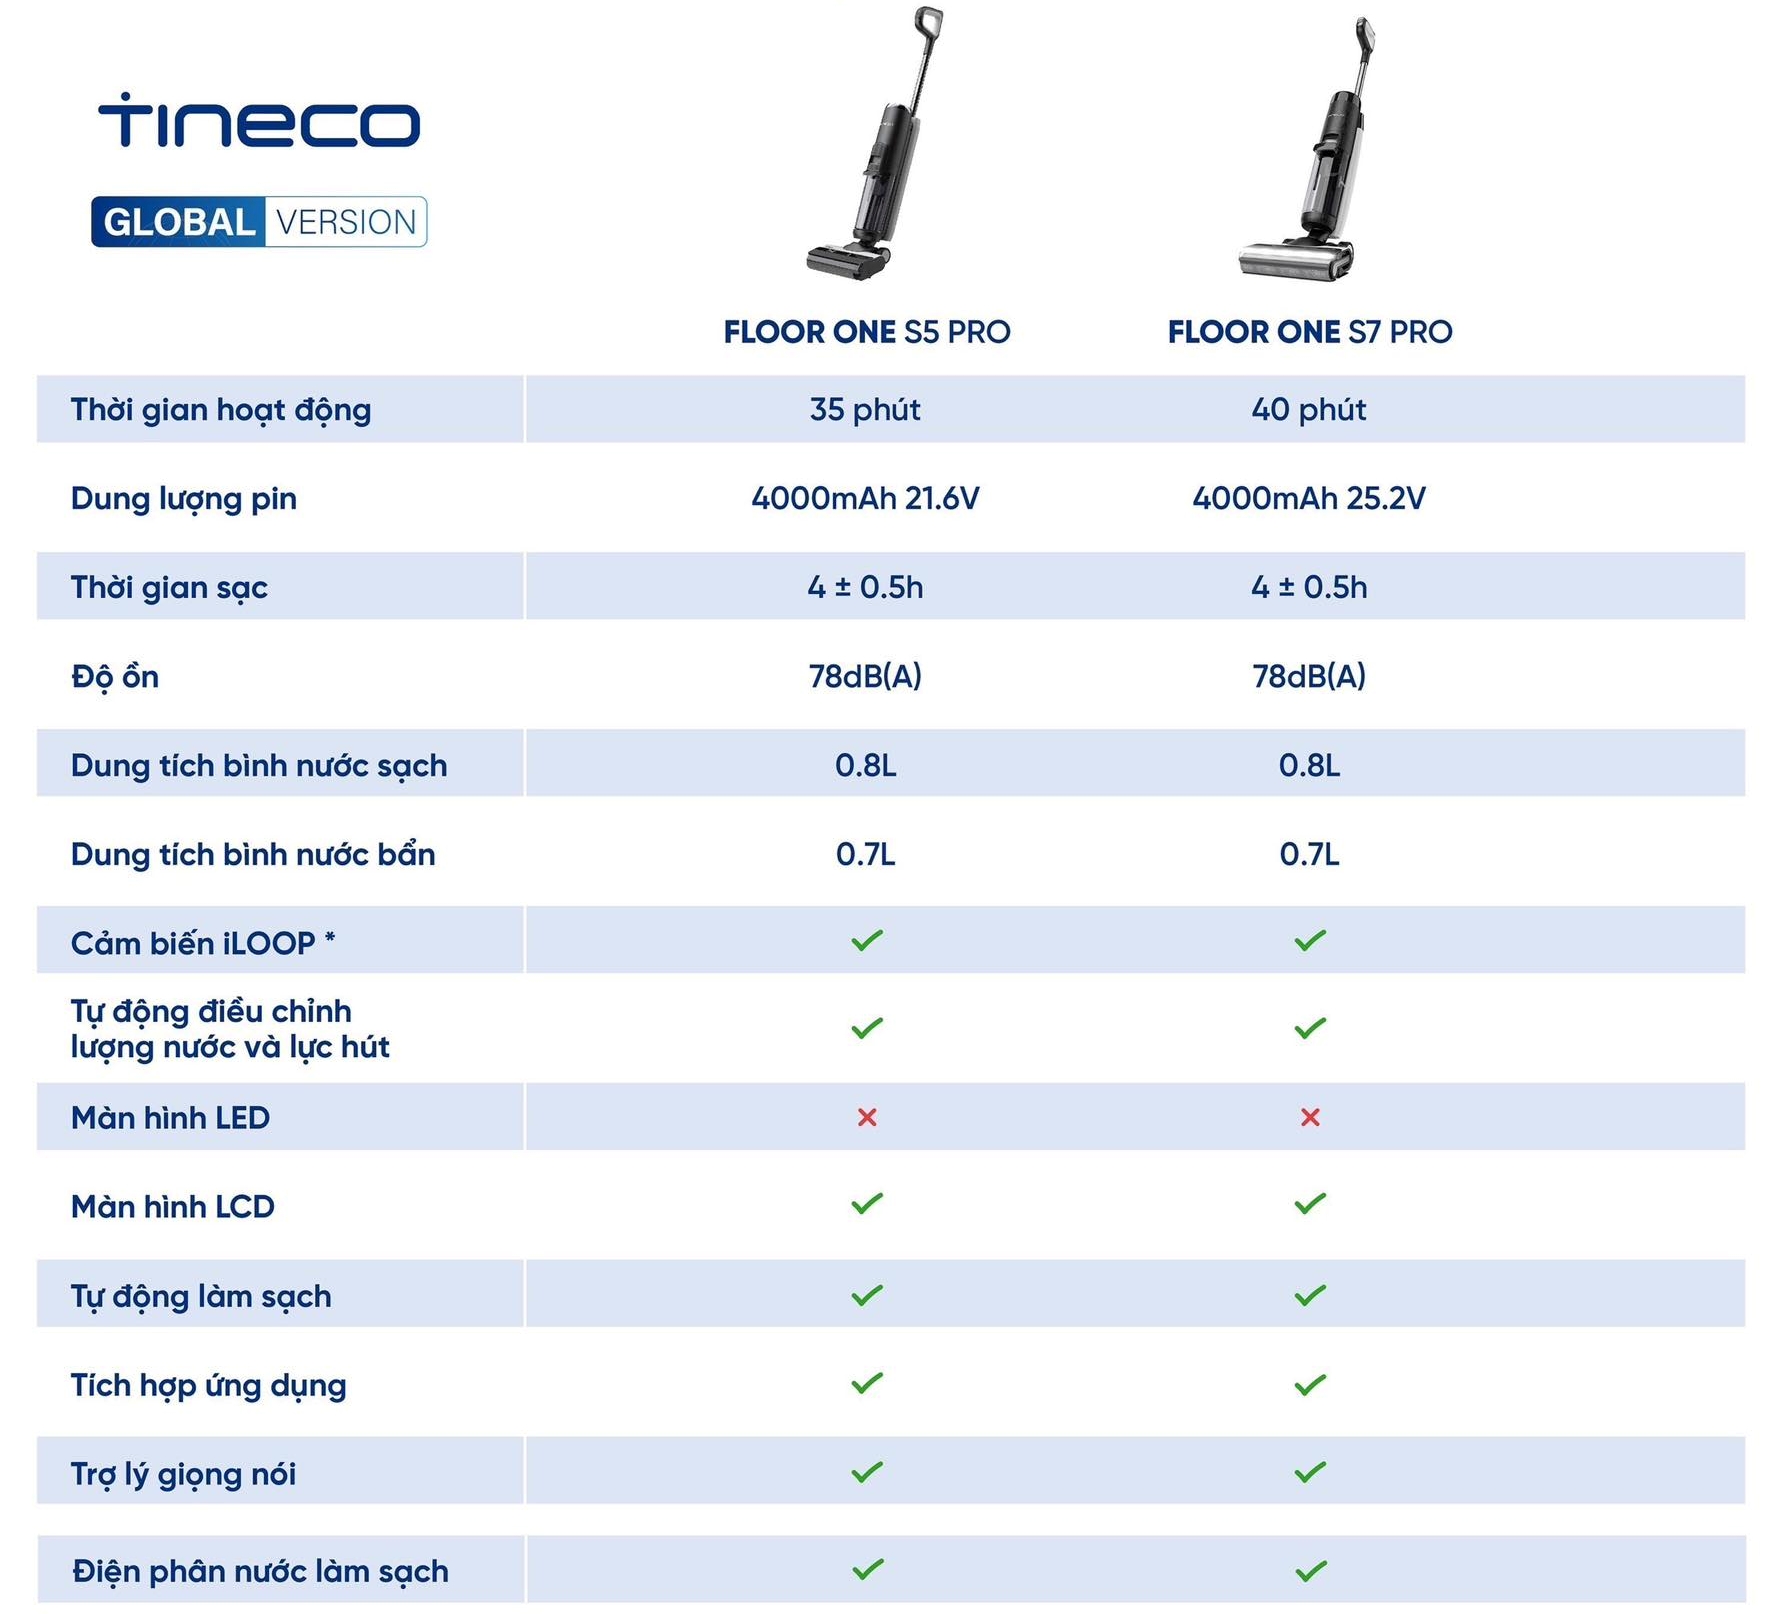 Trải nghiệm máy lau hút Tineco Floor One S5 Pro 2: Sạch cả vết bẩn ướt, tự giặt giẻ, đắt nhưng xắt ra miếng - Ảnh 6.